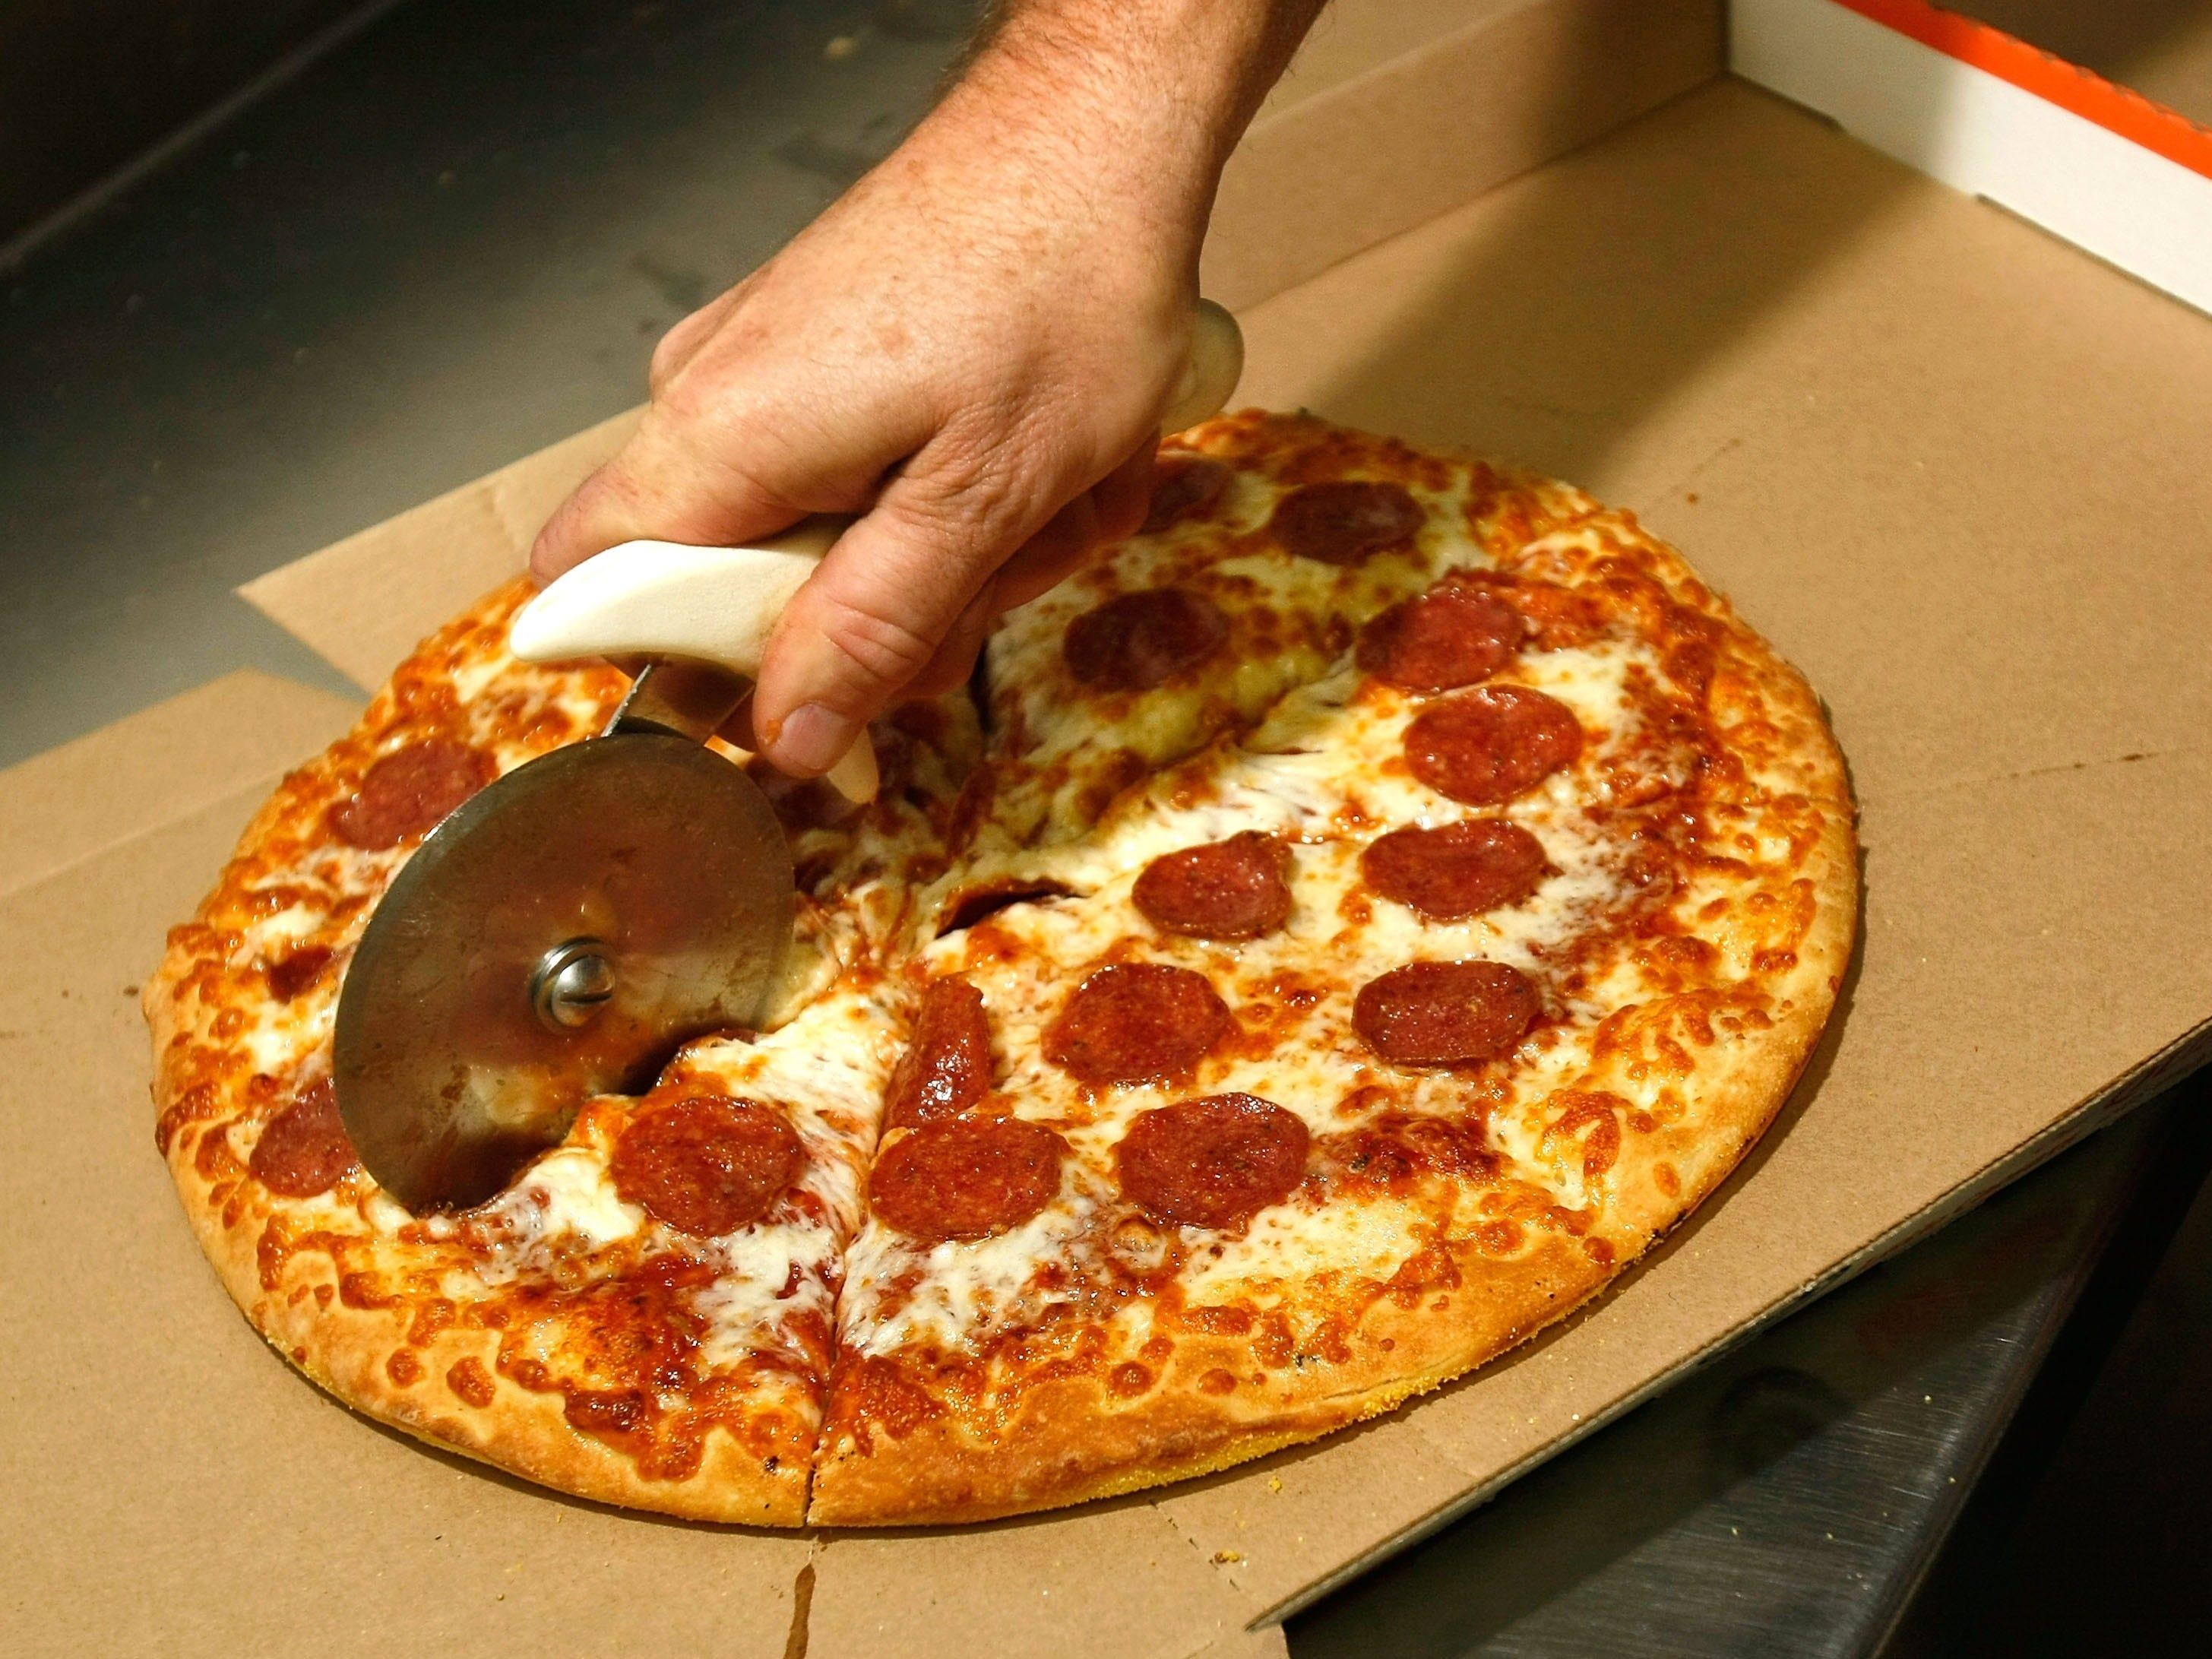 テイクアウトしたピザに差別的マーク…従業員は即解雇。報告した顧客に 